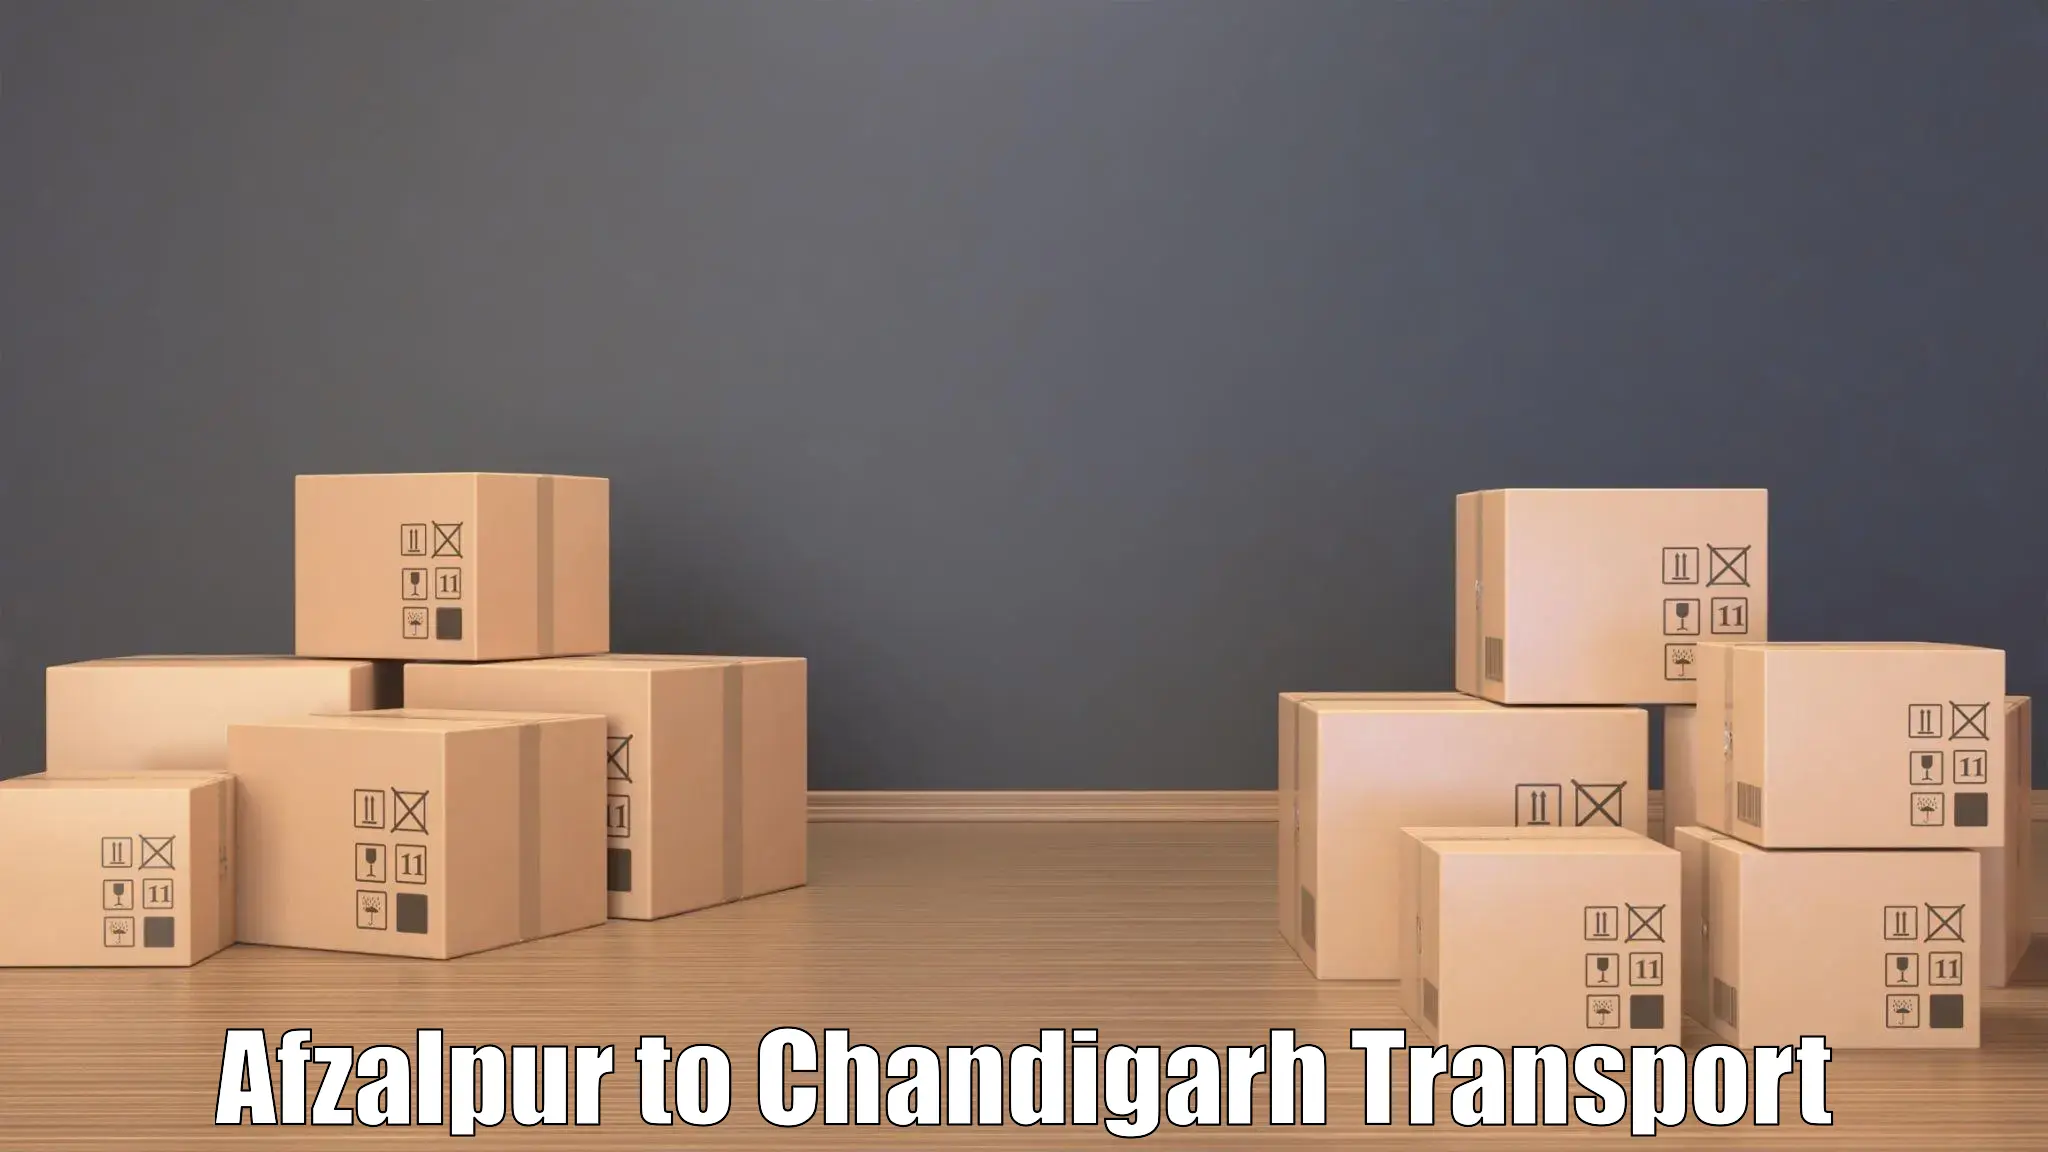 Interstate transport services Afzalpur to Chandigarh